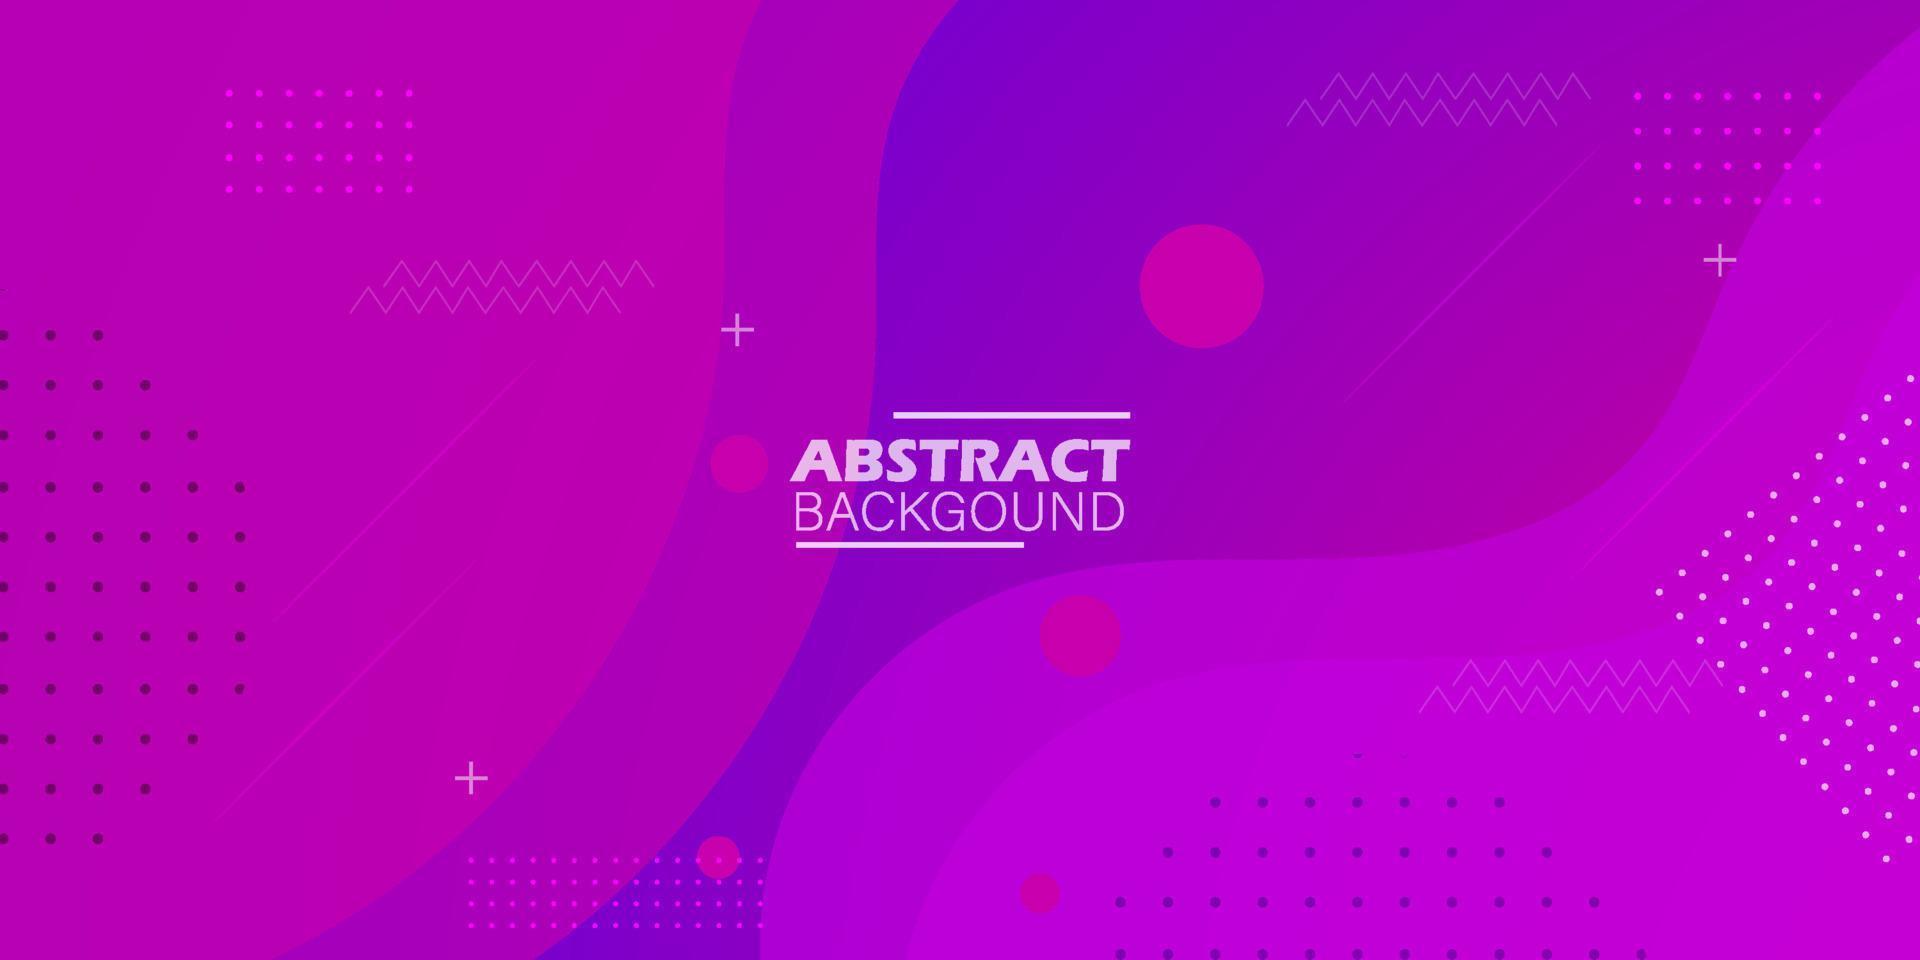 disegno di sfondo astratto strutturato dinamico in stile 3d con colore viola e rosa. può essere utilizzato per poster, cartelloni, brochure, banner, pagine Web, intestazioni, copertine e altro. vettore eps10